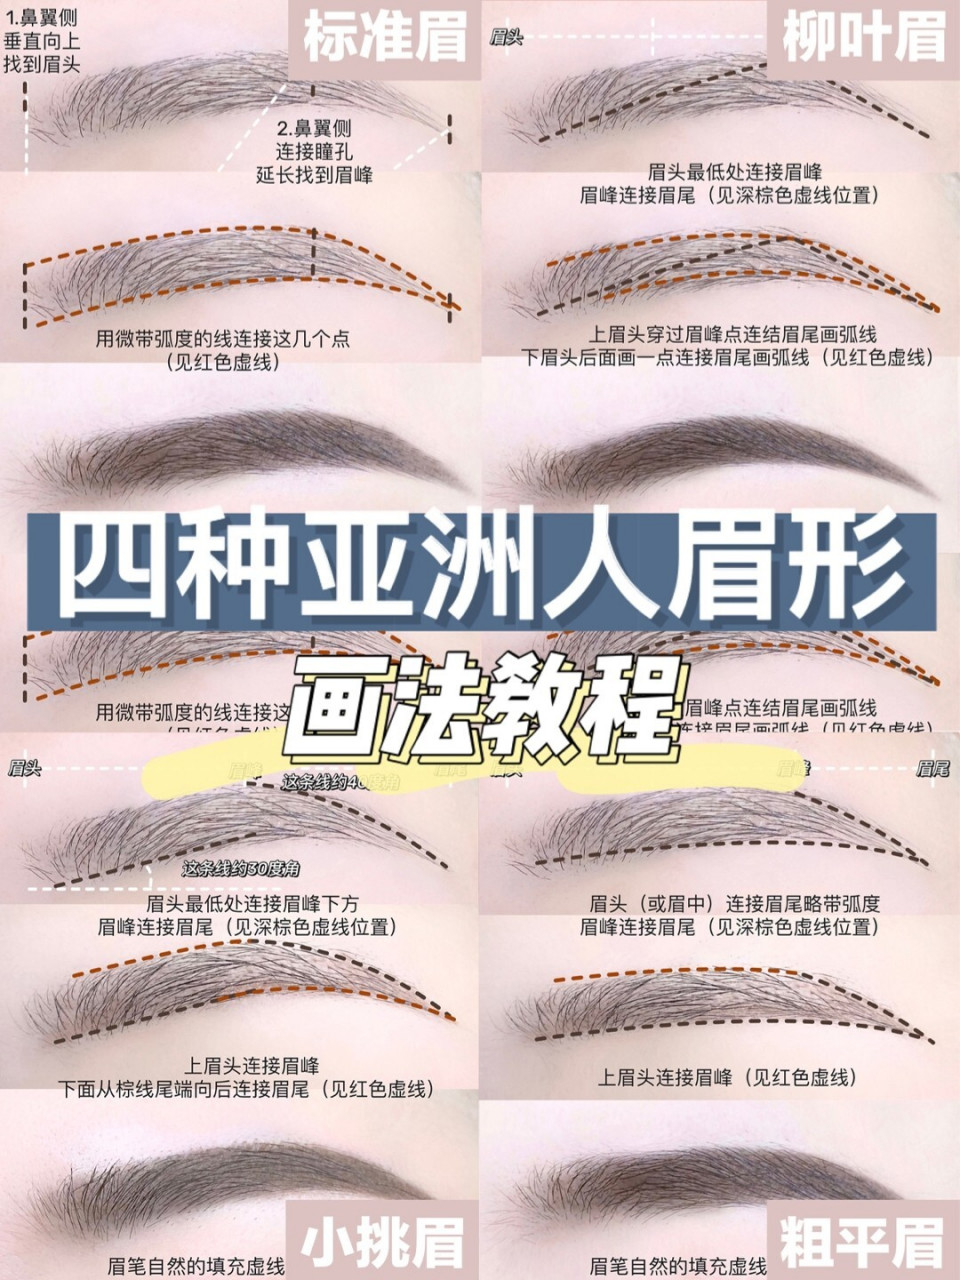 新手画眉教程 四种亚洲人眉形画法 标准眉形通常线条都比较的圆滑